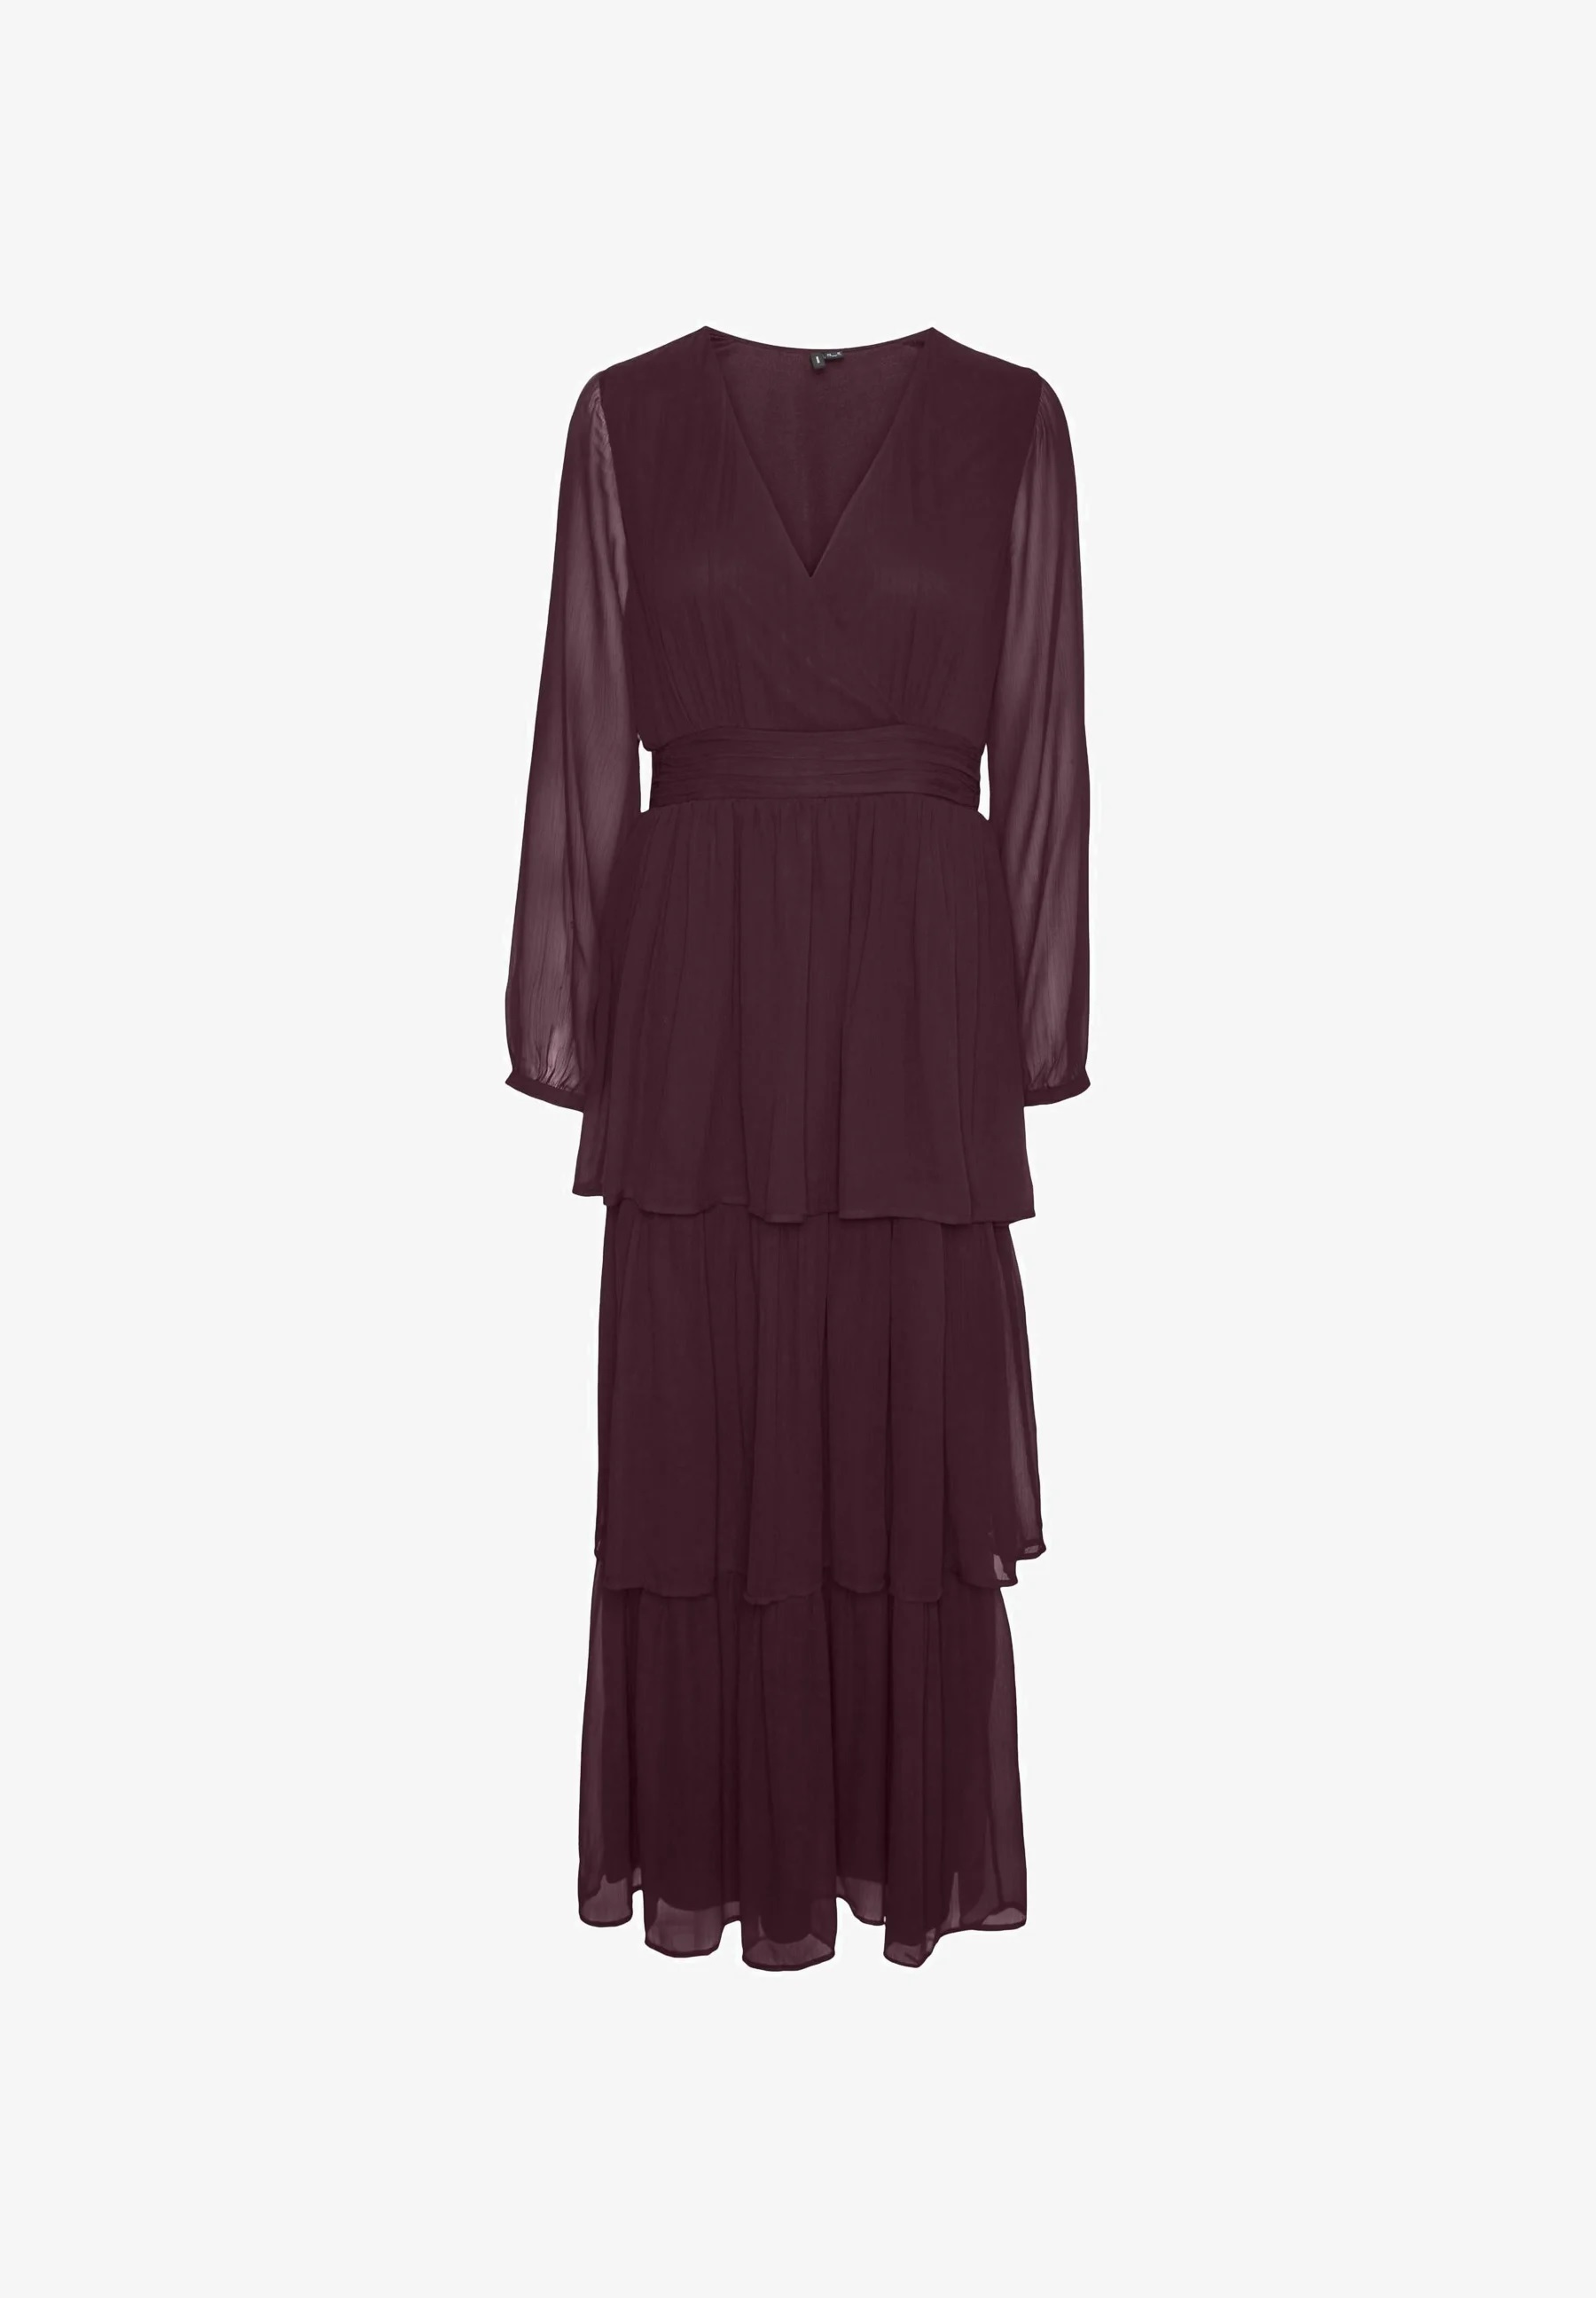 Vestido largo plisado de Vero Moda por 54,99 euros.